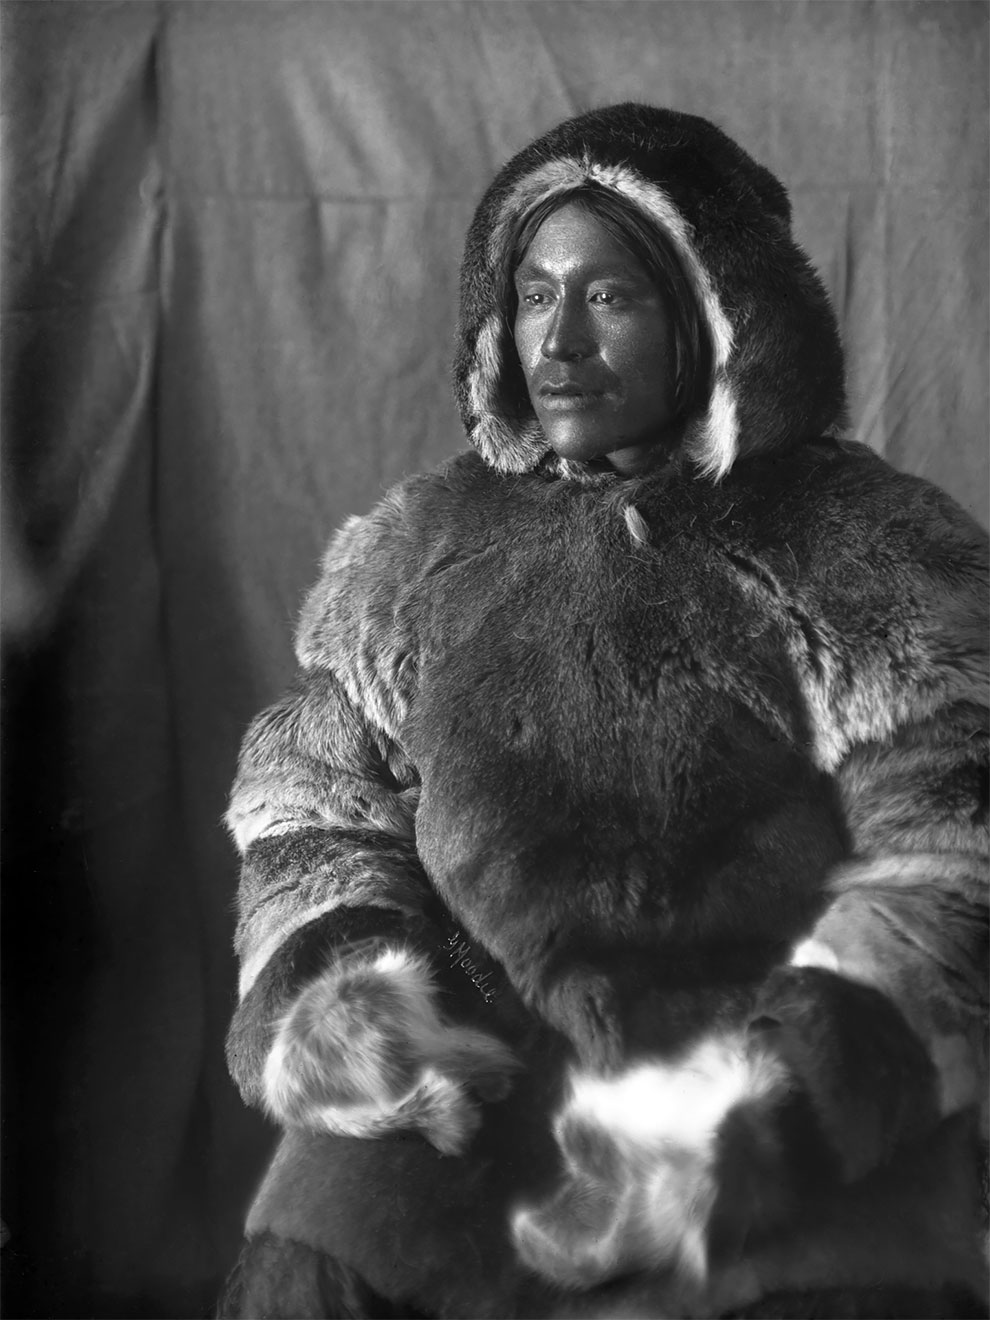 Жизнь инуитов в 1900-х годах